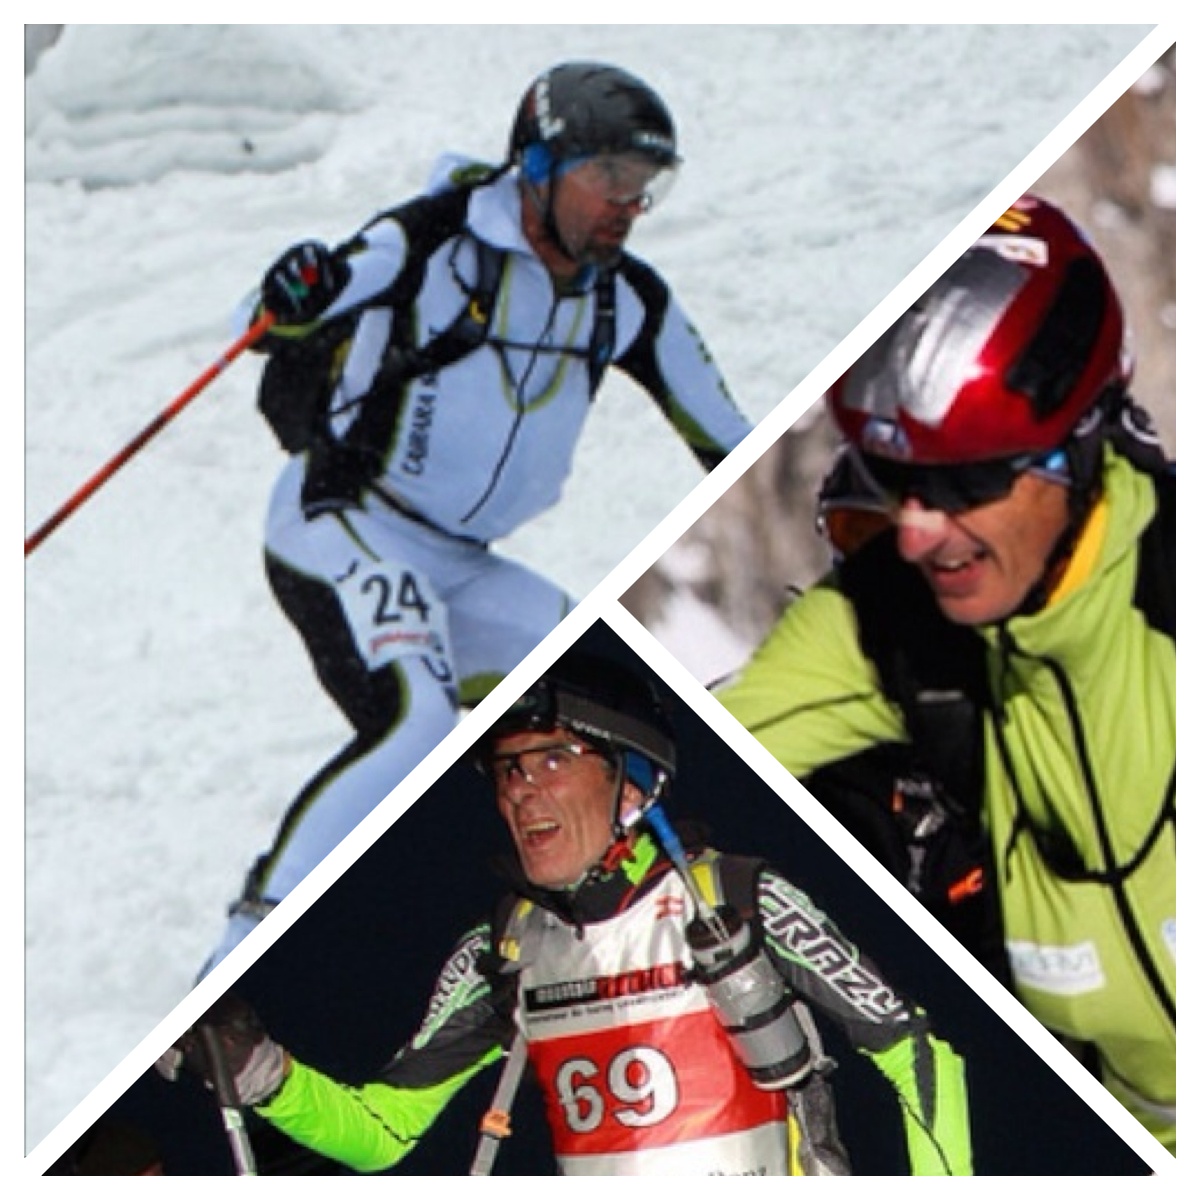 classificone skialp 2014 vincitori